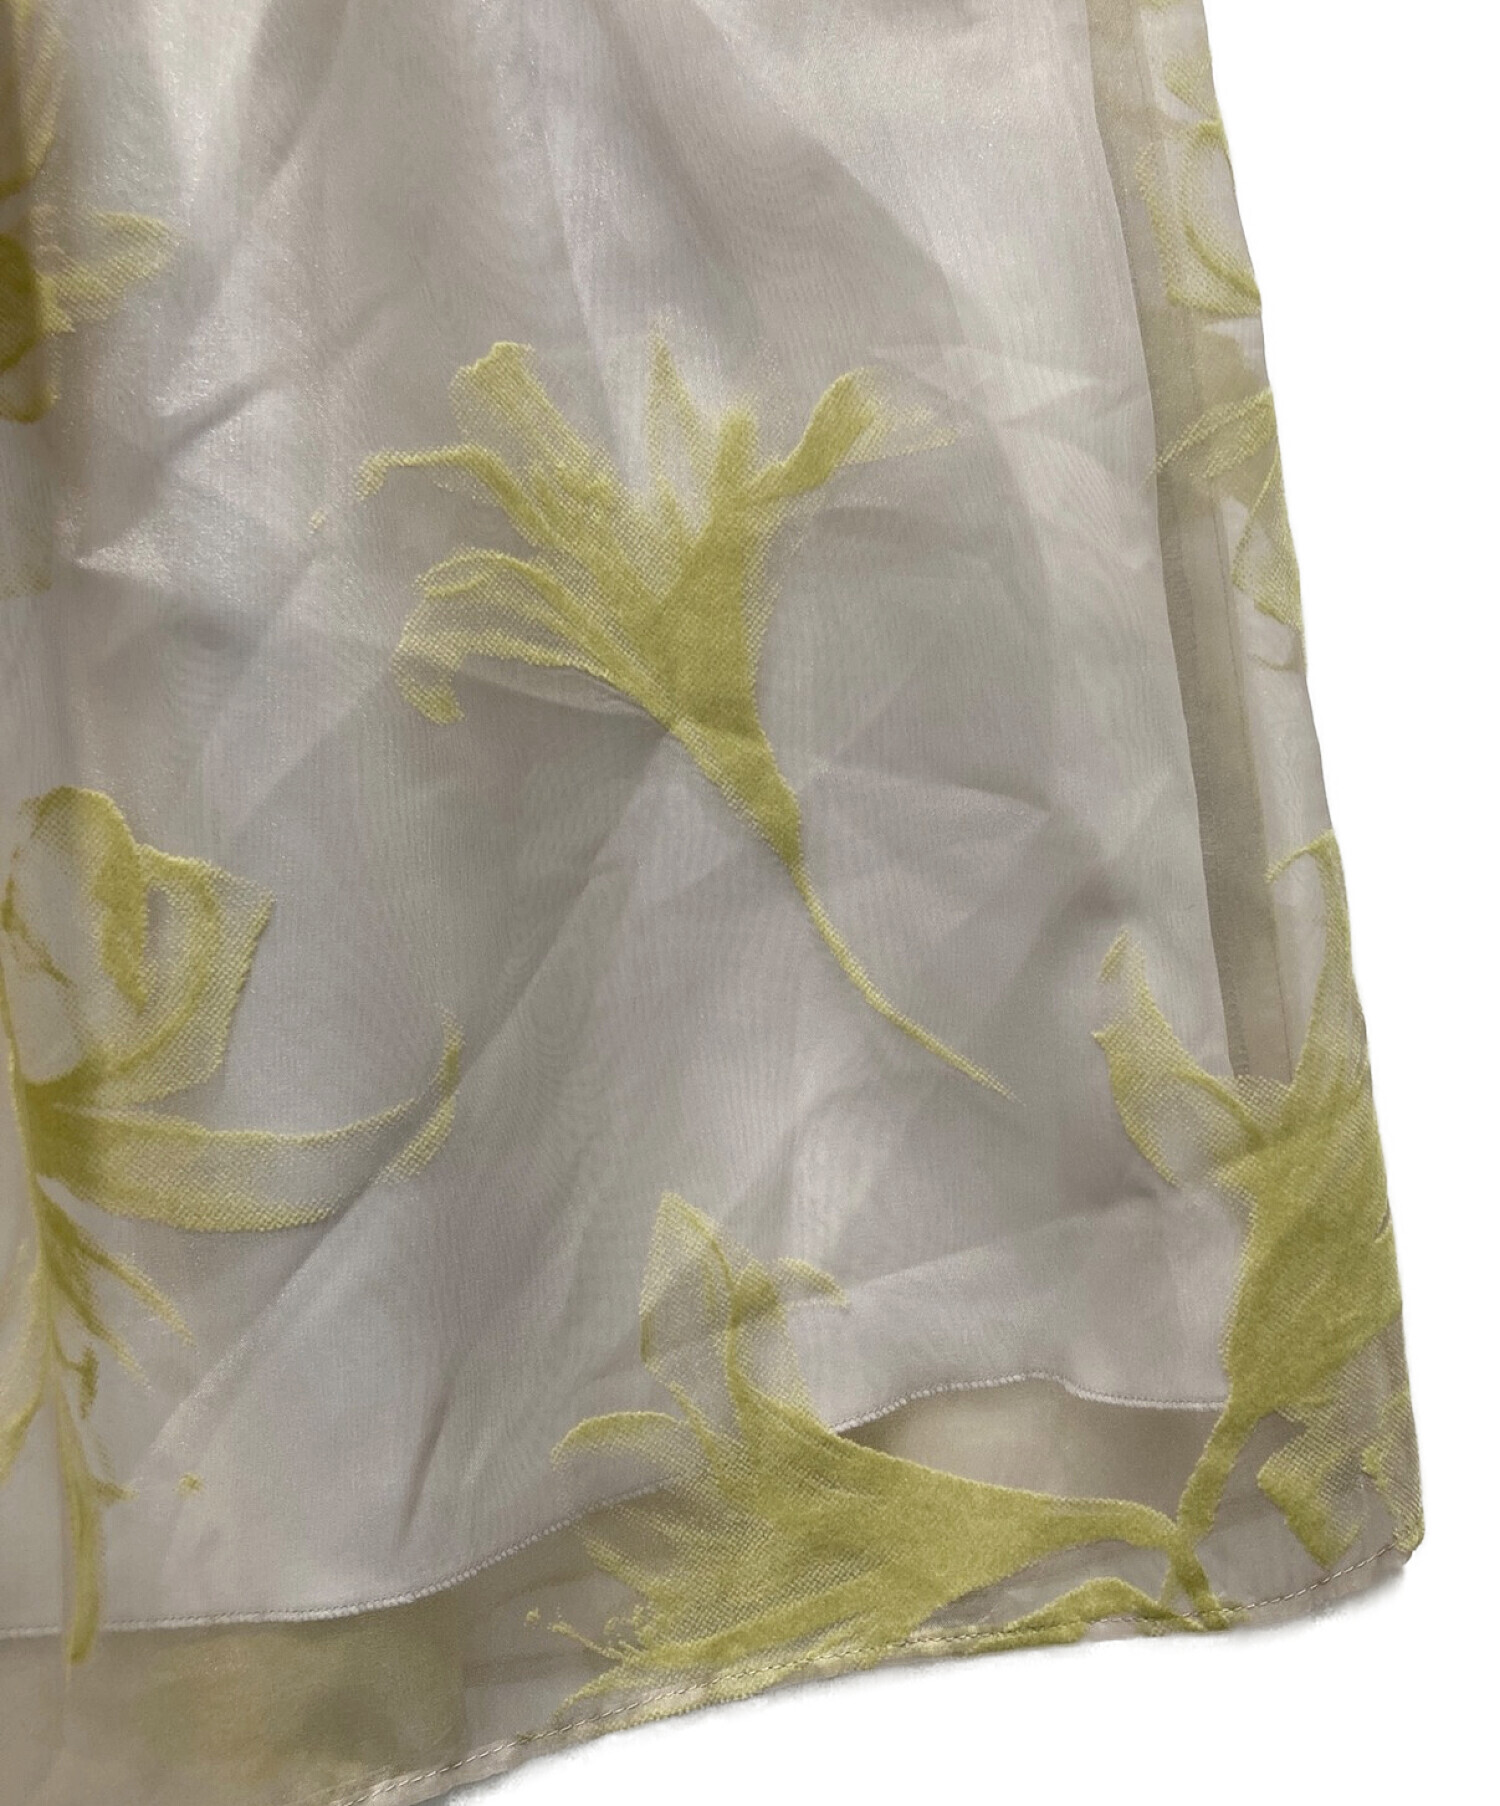 Maglie par ef-de (マーリエ パー エフデ) フロッキーオーガンジースカート グレー サイズ:5 未使用品